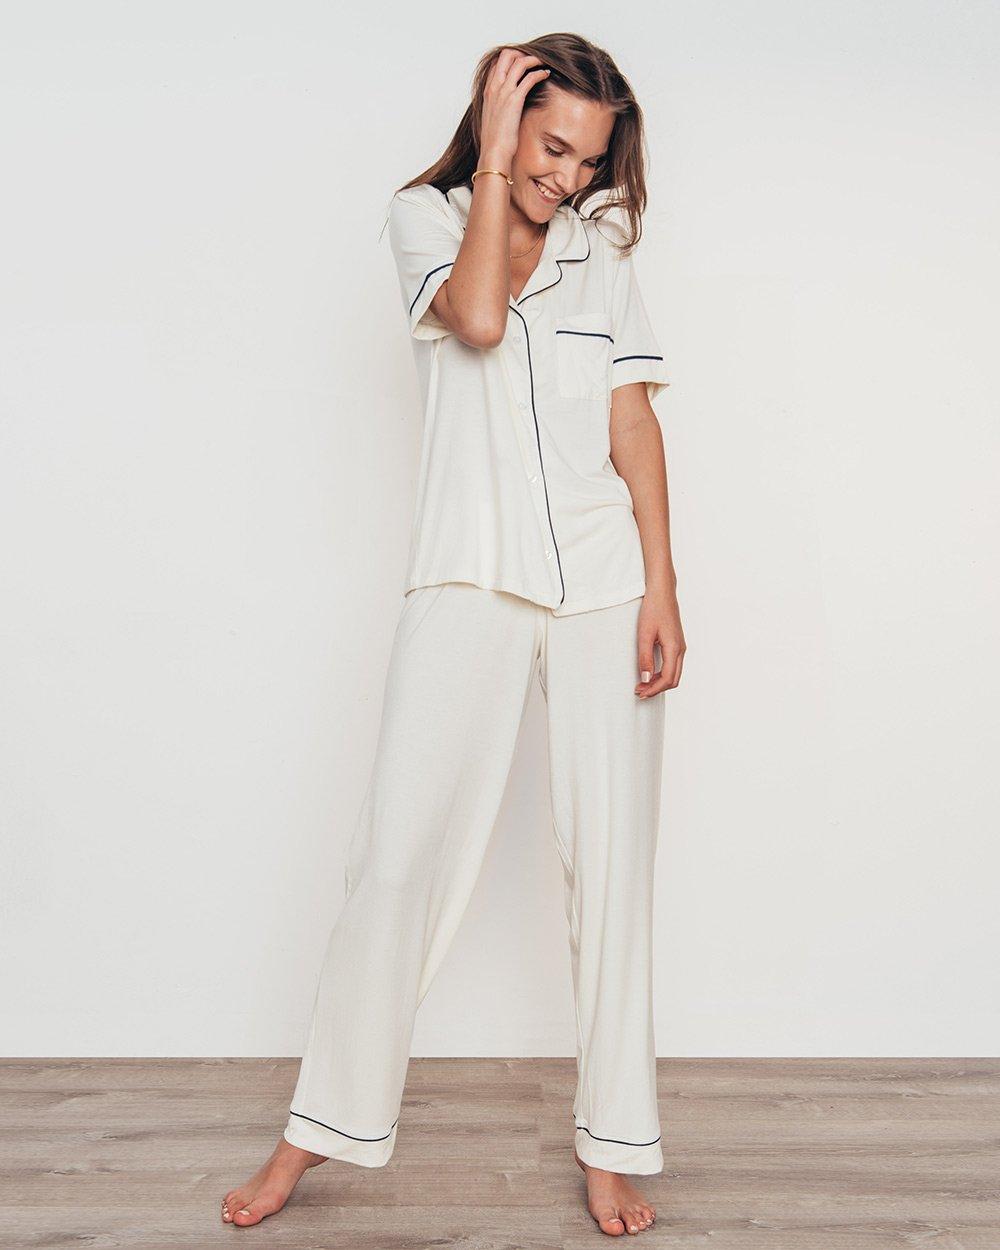 Eberjey-Pyjamas-Gisele Short Sleeve Pant Set-brava-boutique